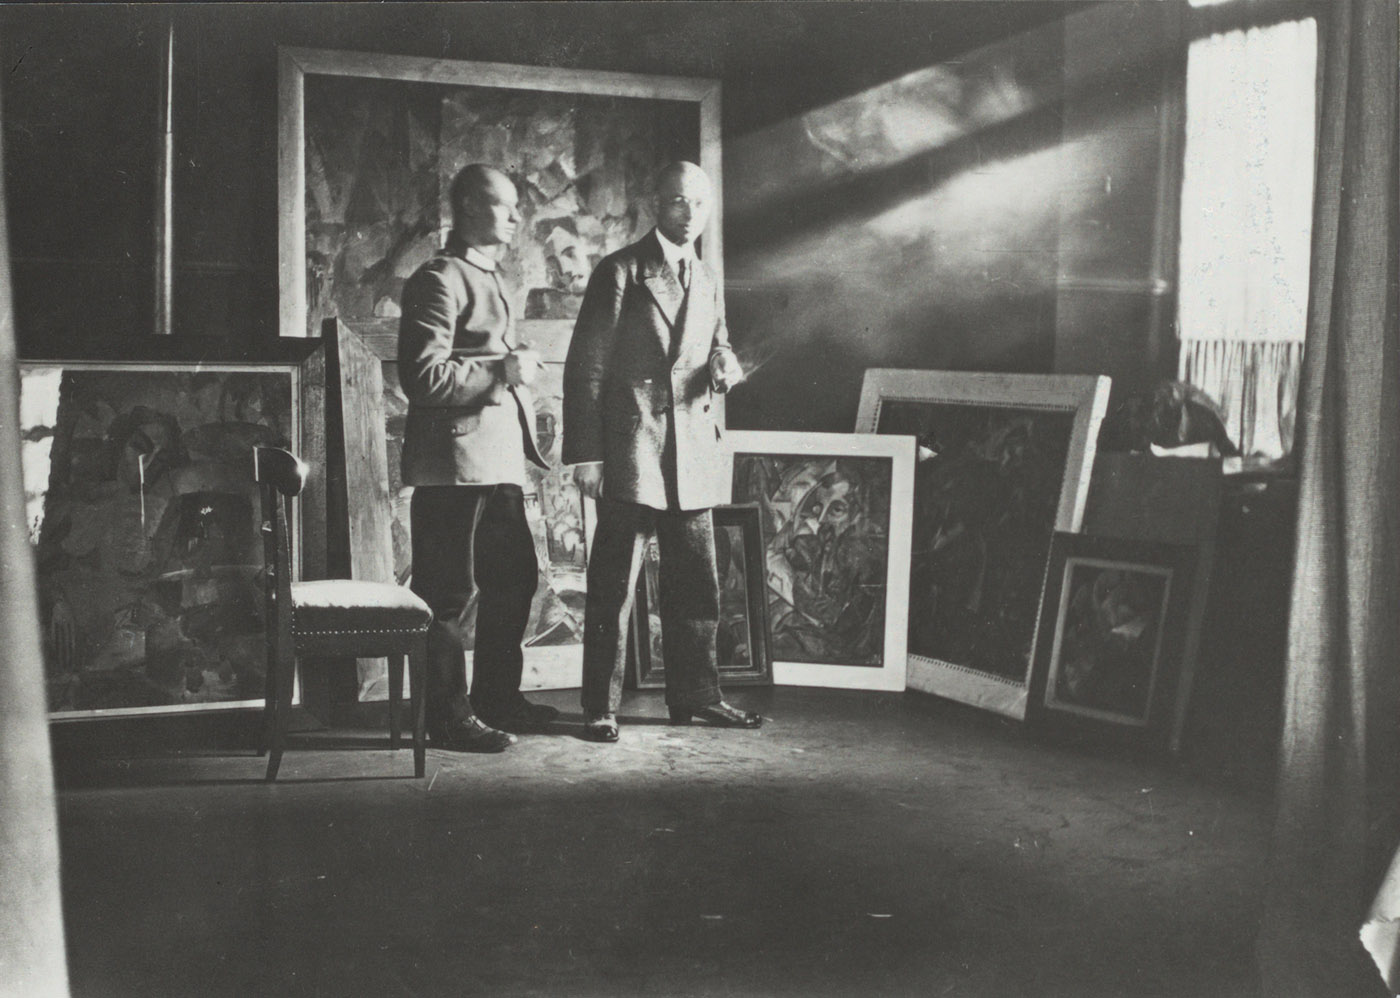 Johannes Itten in seinem Atelier zusammen mit Oskar Schlemmer, Stuttgart 1913, im Bildhintergrund seine frühen abstrakten Gemälde (Hs NL 11: Ba 3.7; <a href="https://doi.org/10.7891/e-manuscripta-123165">Digitalisat</a>)